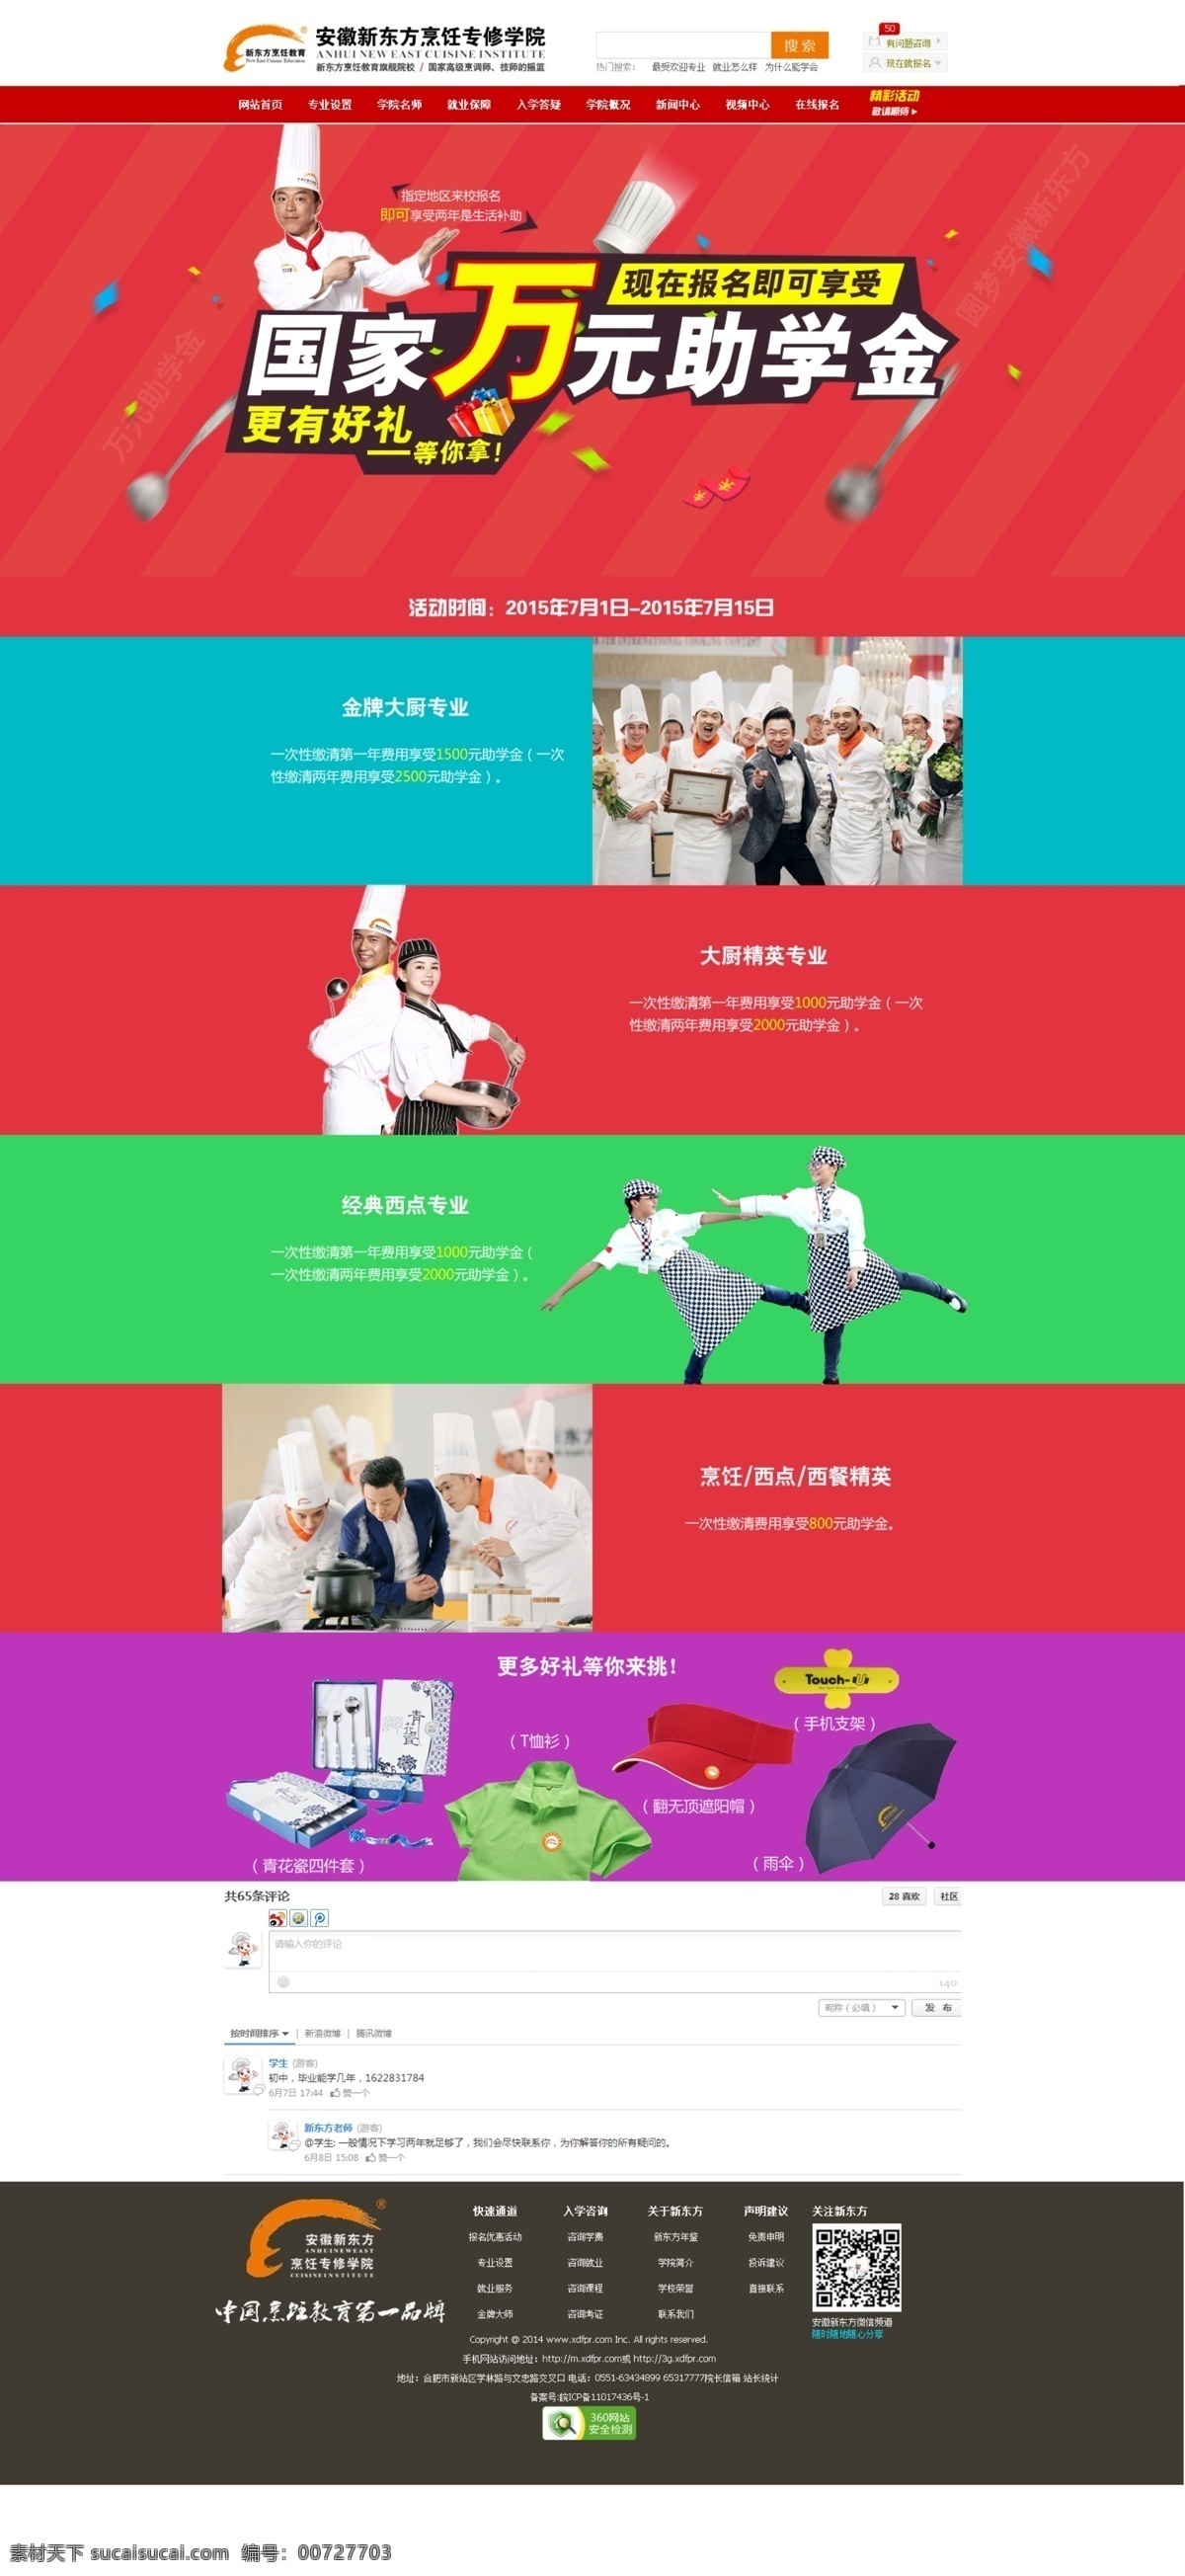 七月 助学金 专题 优惠专题 厨师 促销页面 网页设计 中文模板 源文件 白色